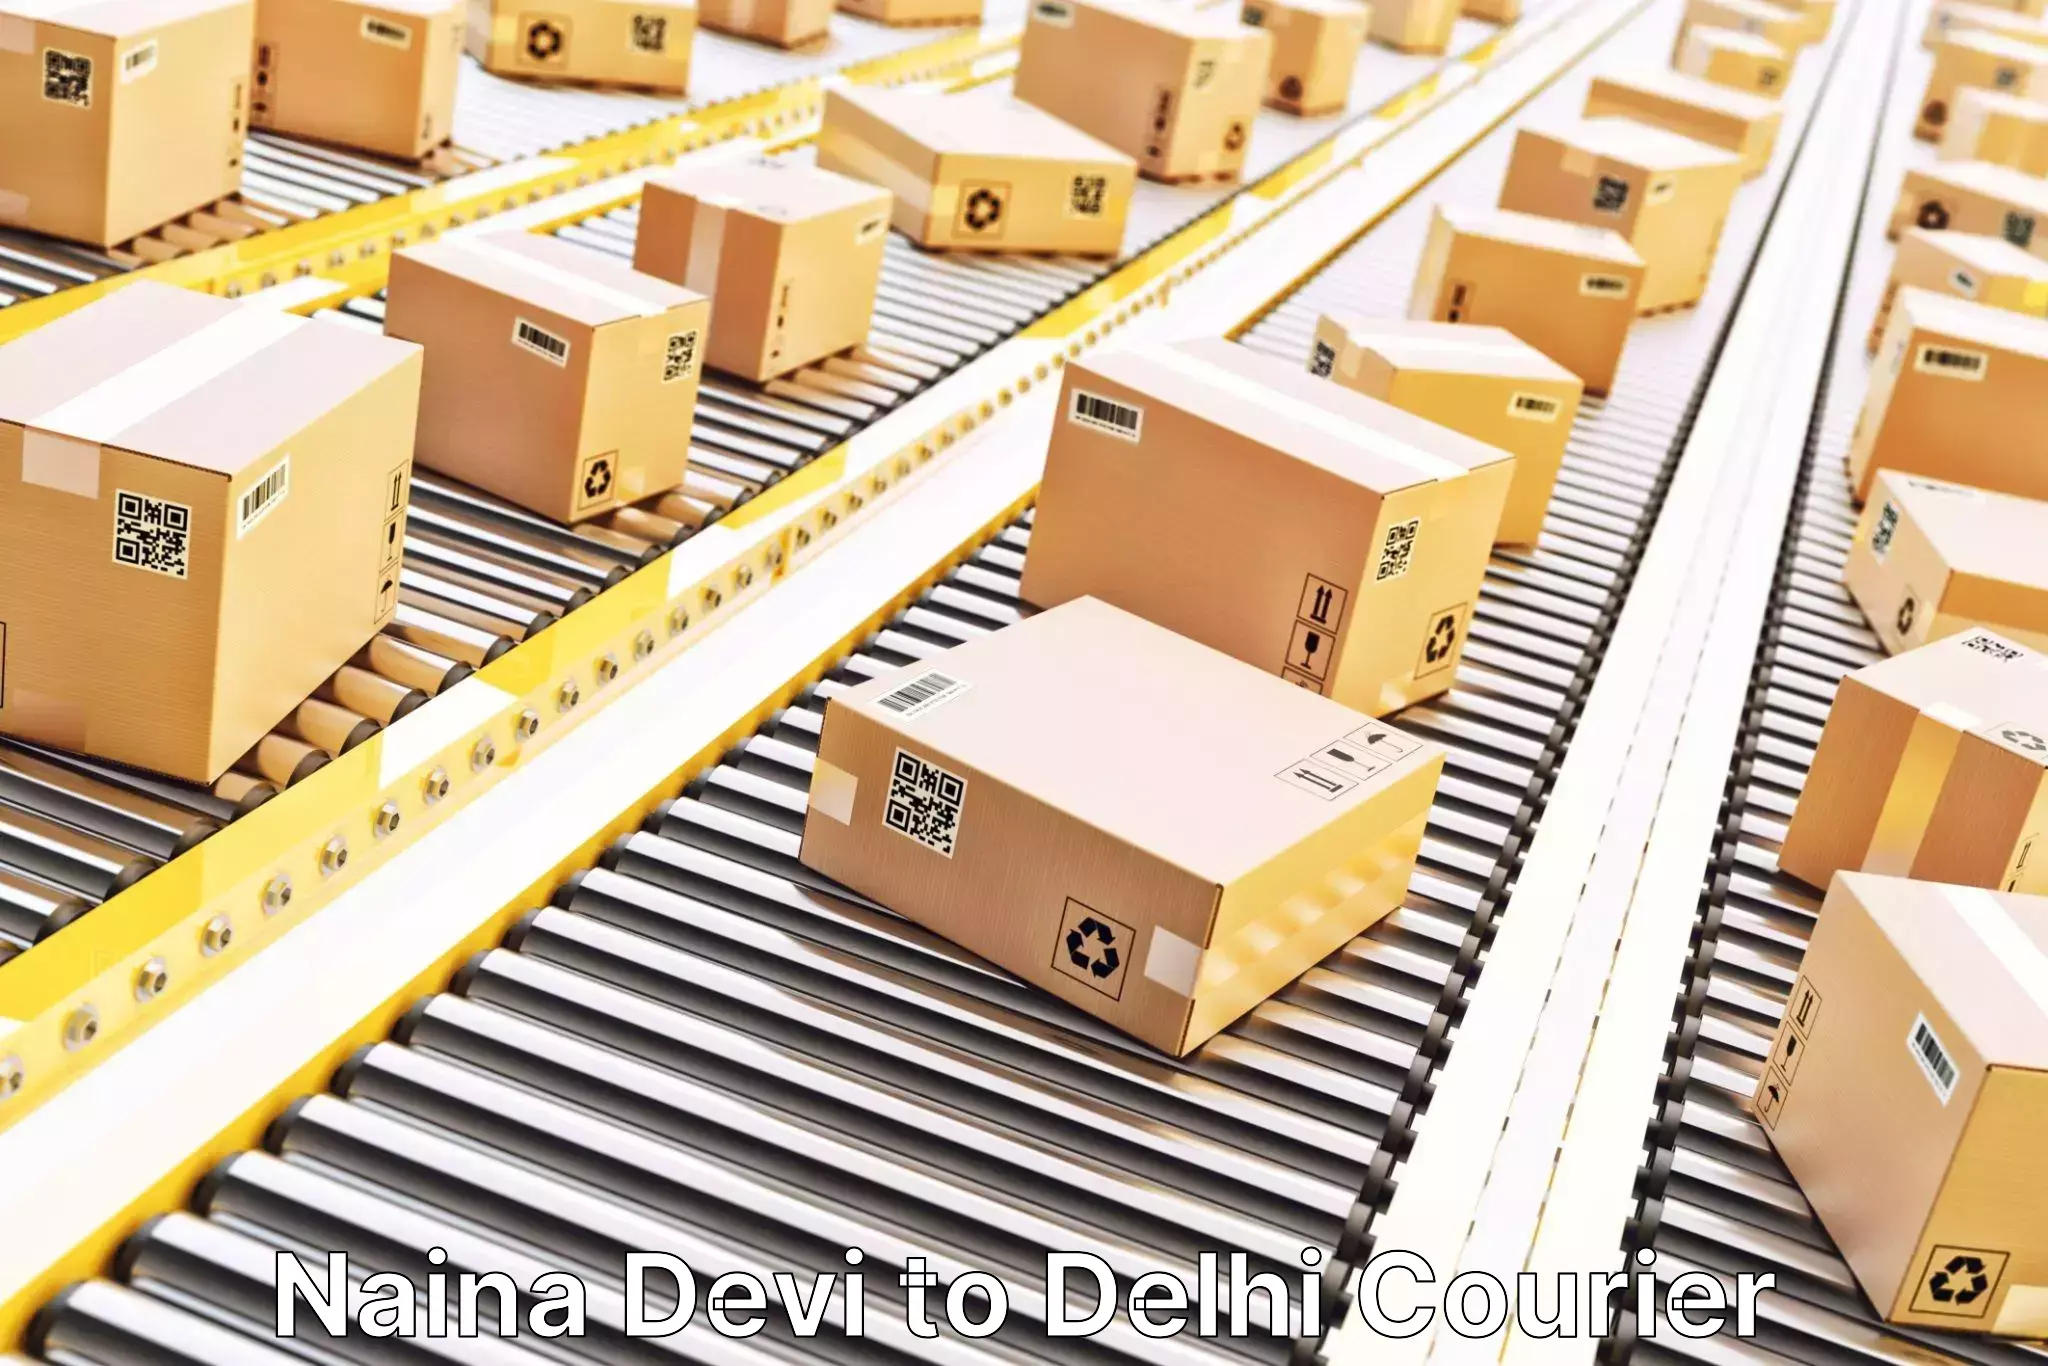 Custom shipping services Naina Devi to Jawaharlal Nehru University New Delhi